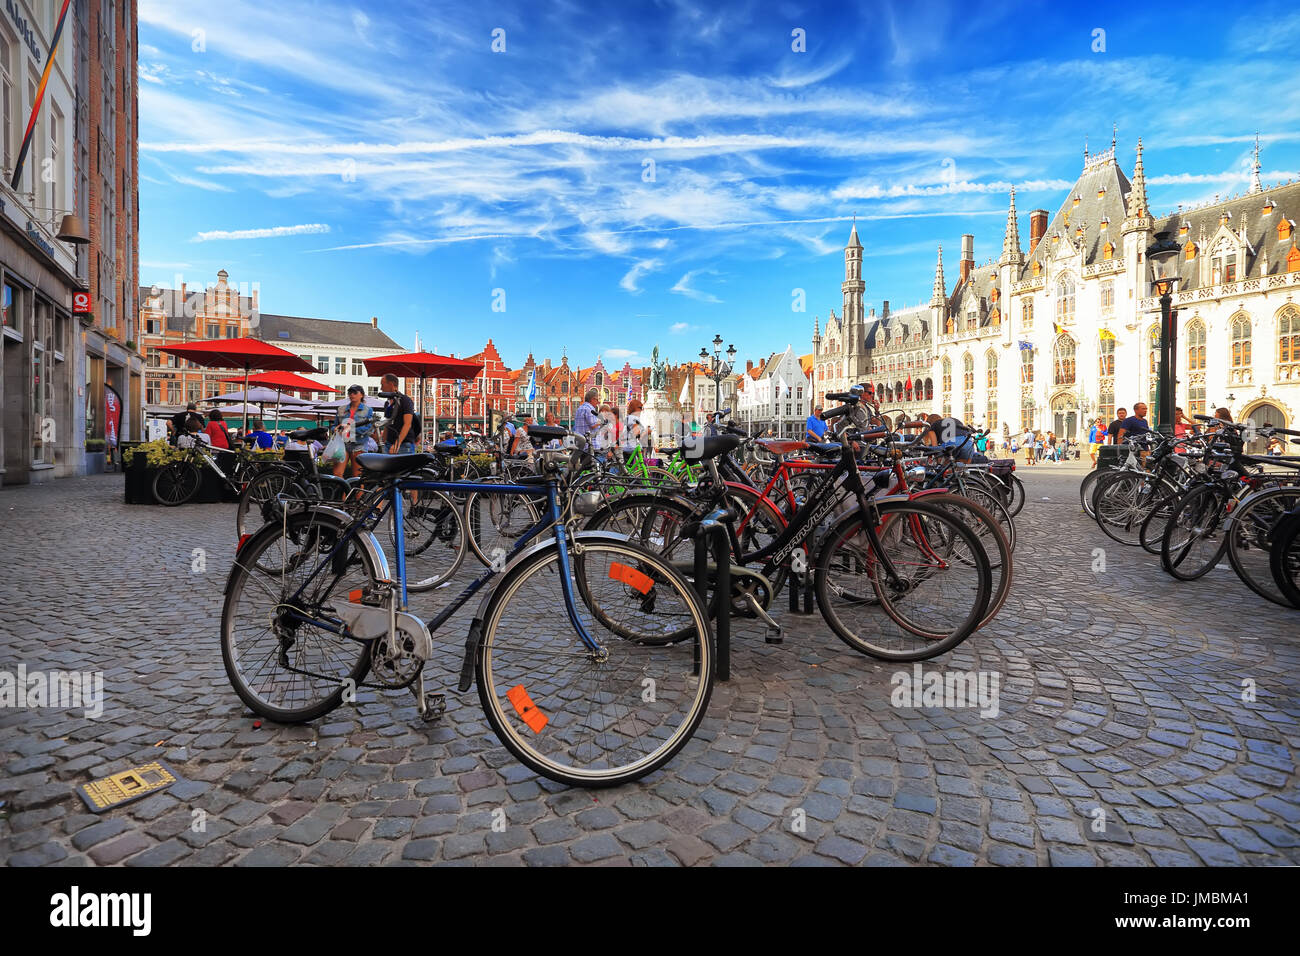 Brügge, Belgien - 16. Juli 2017: Brügge Burgplatz an einem Sommertag. Fahrräder geparkt am Burgplatz an einem sonnigen Tag. Typische Stadtansicht von Sommer Brügge. Stockfoto